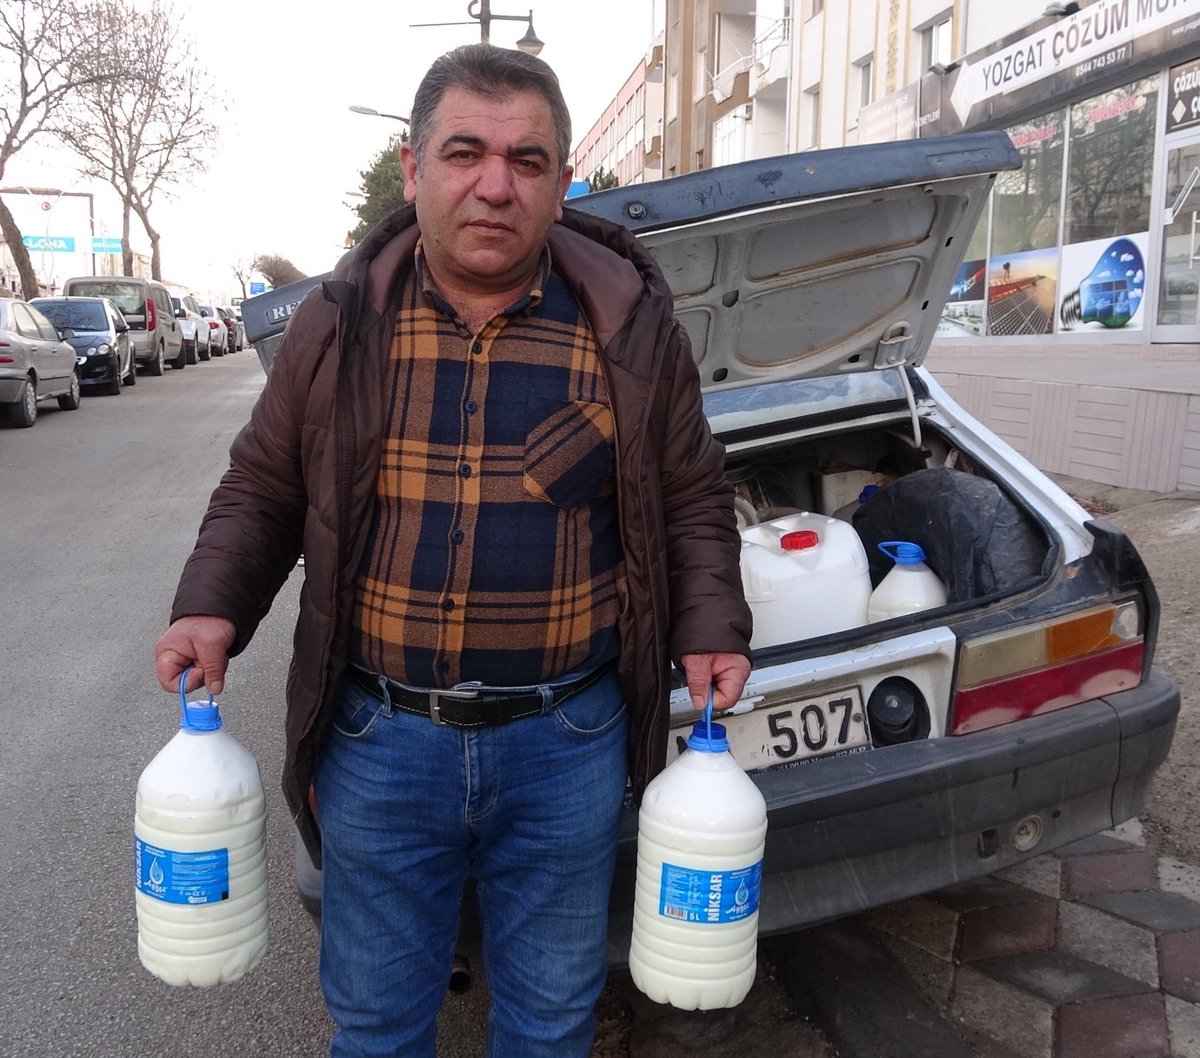 Yozgat'ta Sütçünün Adil Yaklaşımı Gelire Göre Süt Fiyatı Belirleniyor